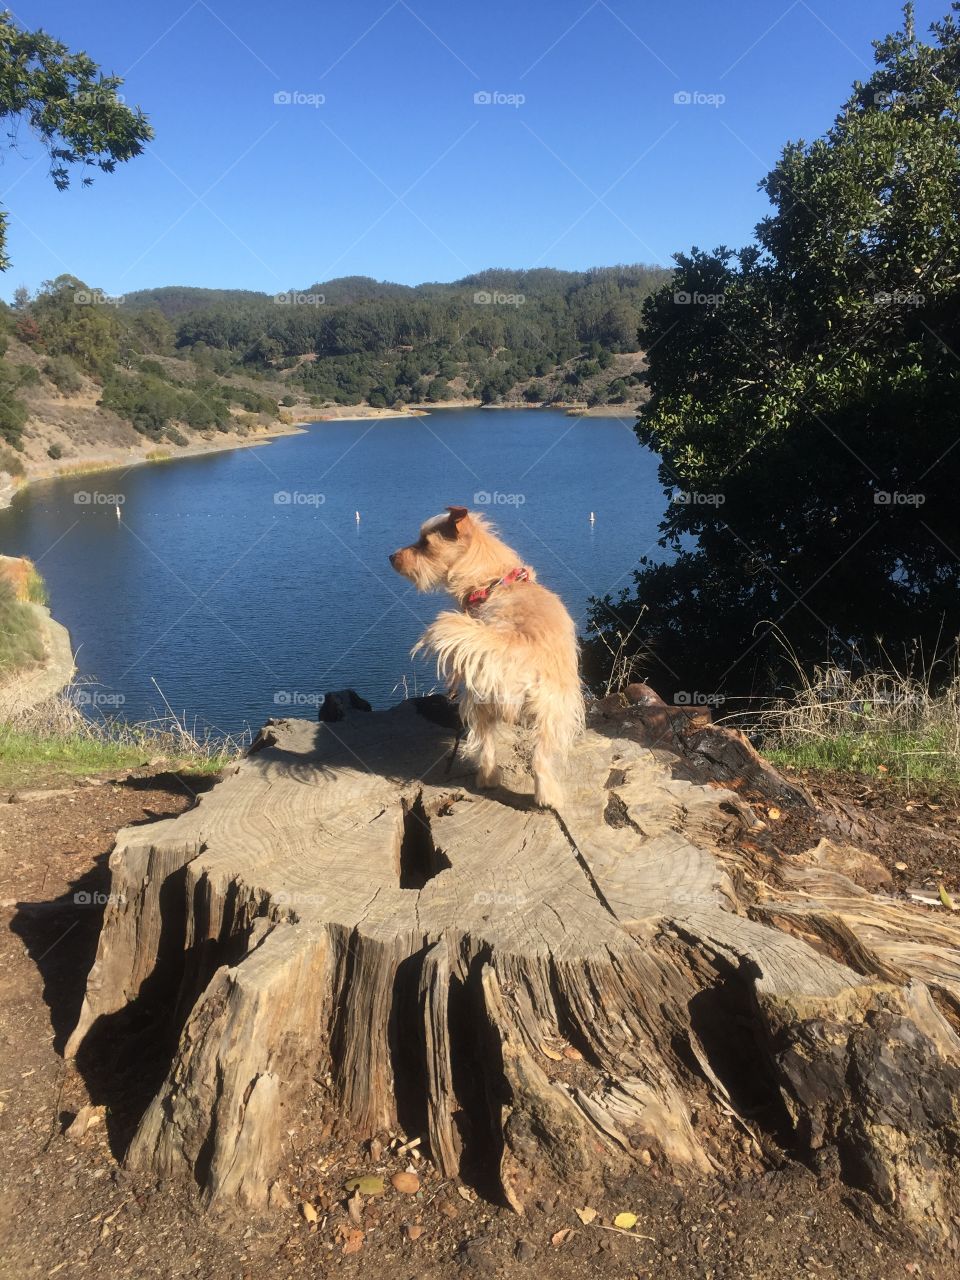 Dog overlooking lake